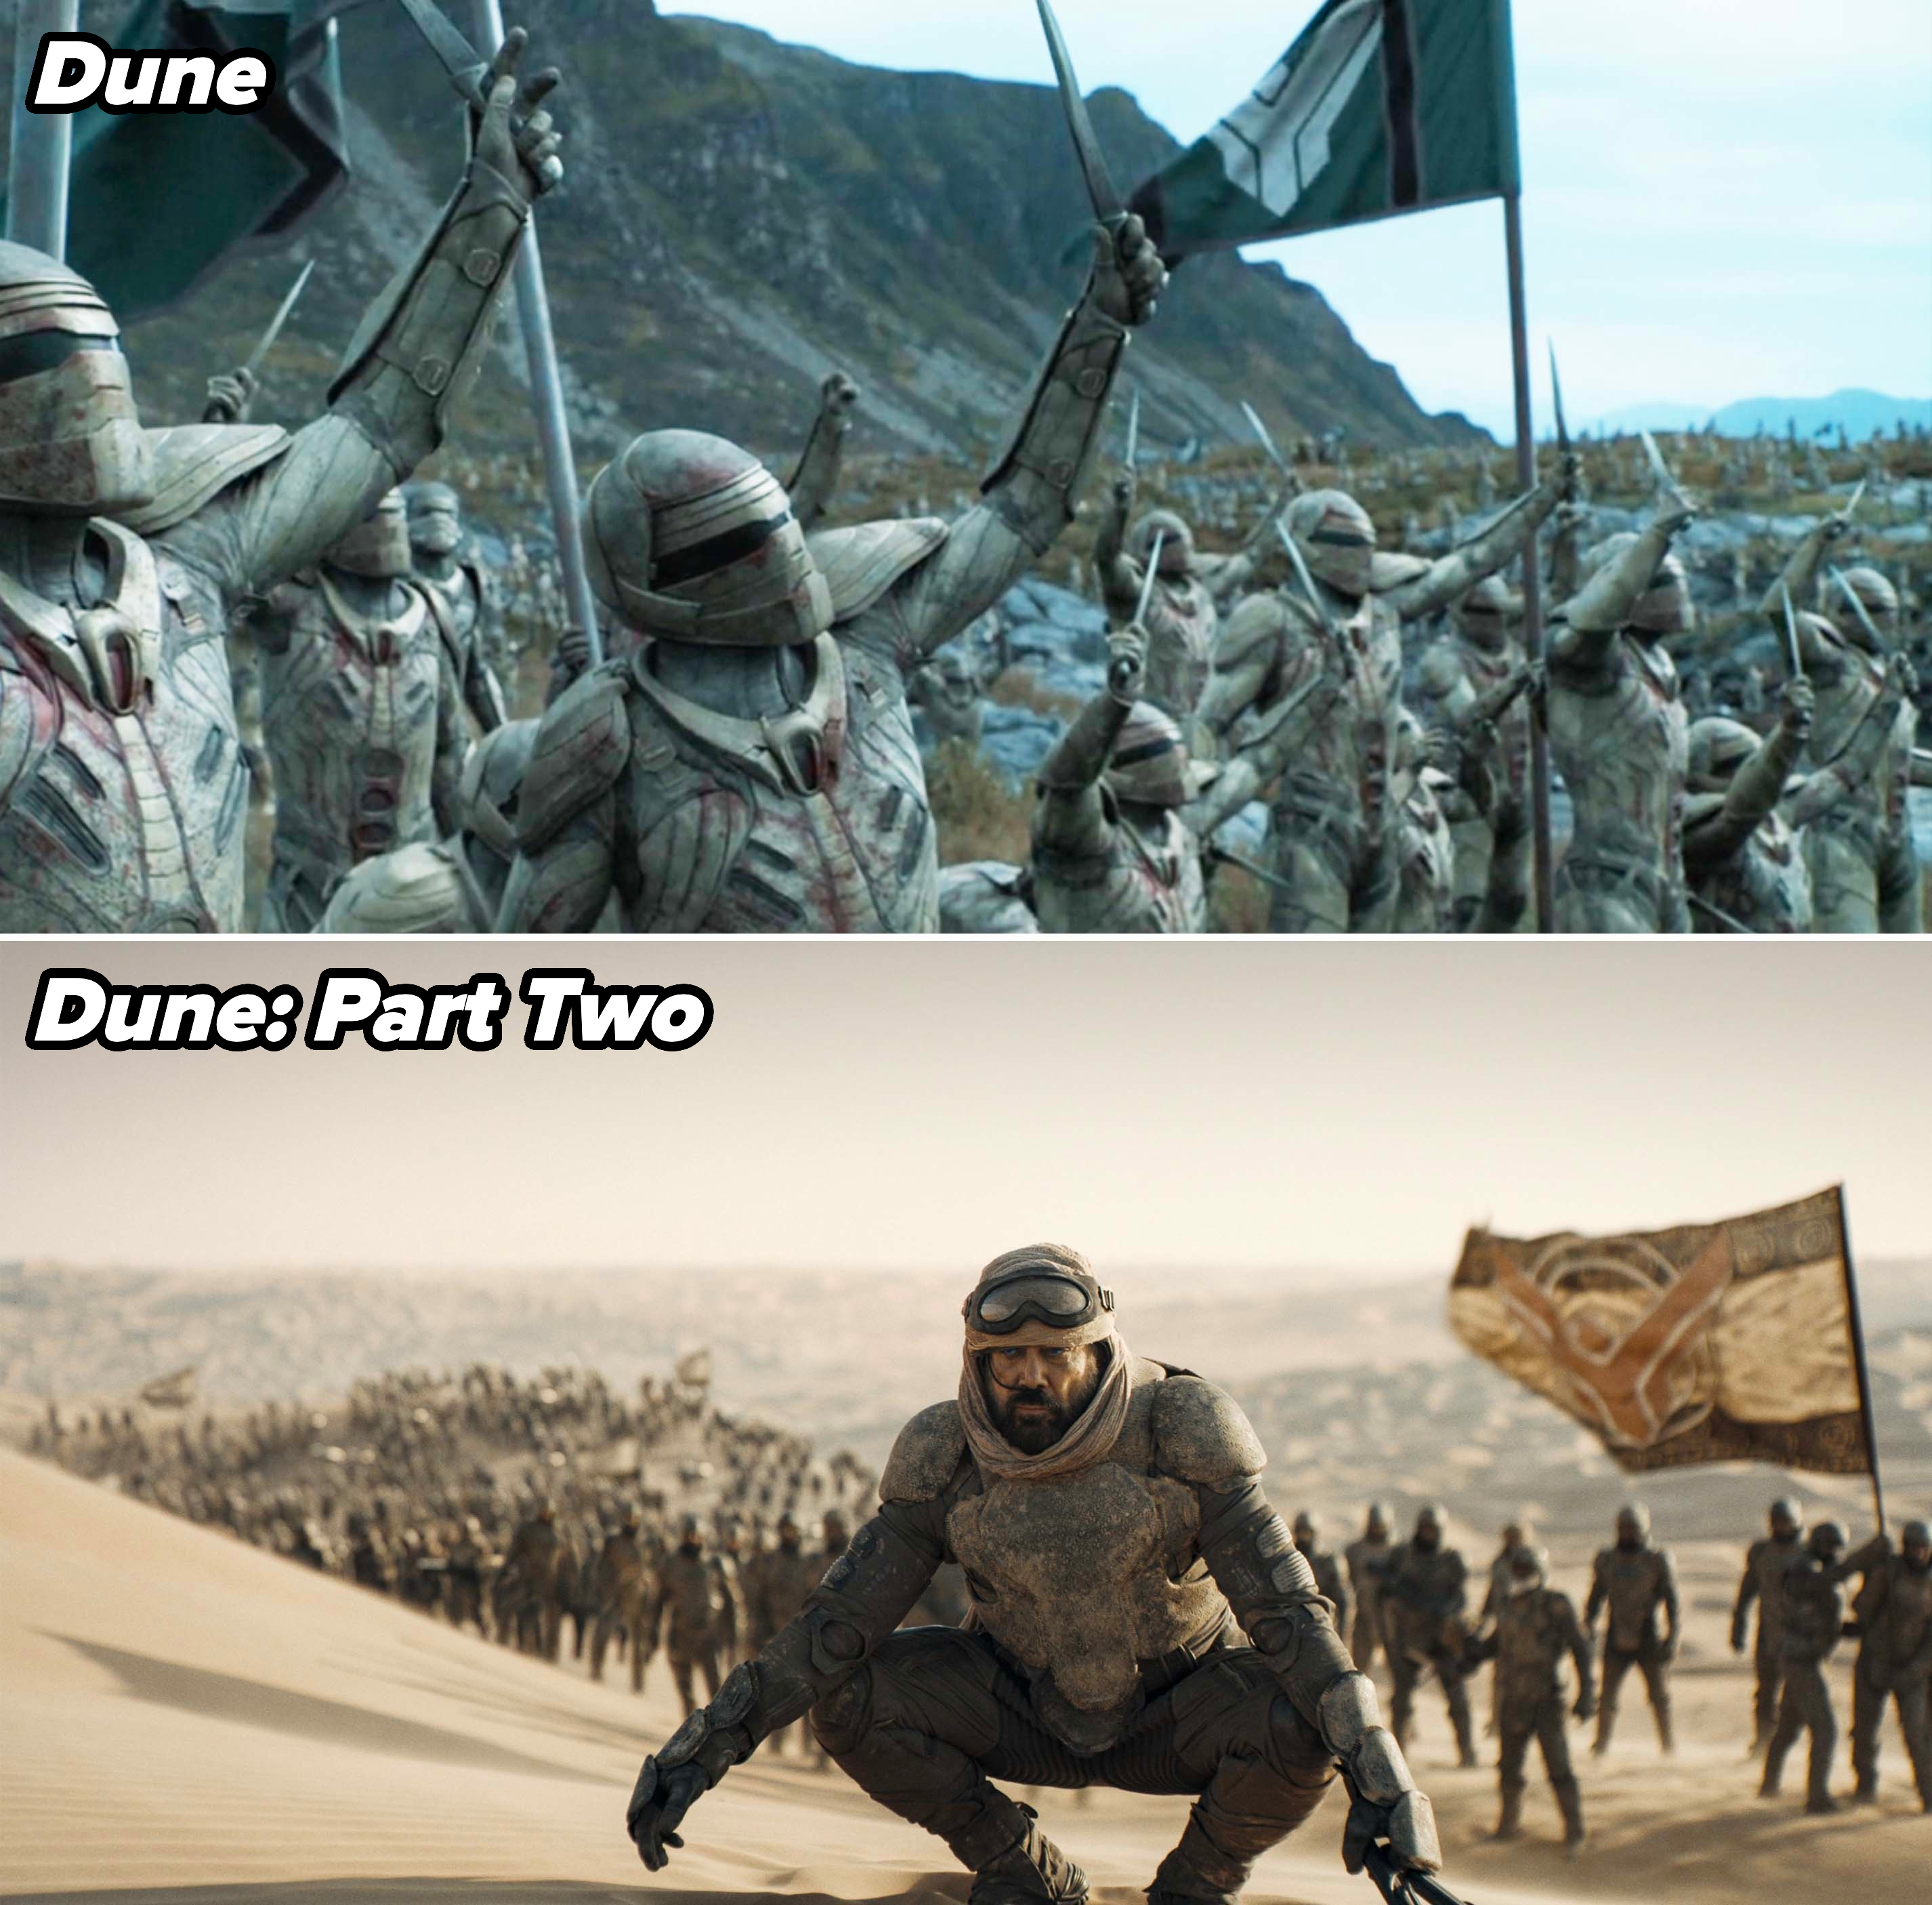 Troops fighting in Dune vs. Stilgar with troops in Dune 2